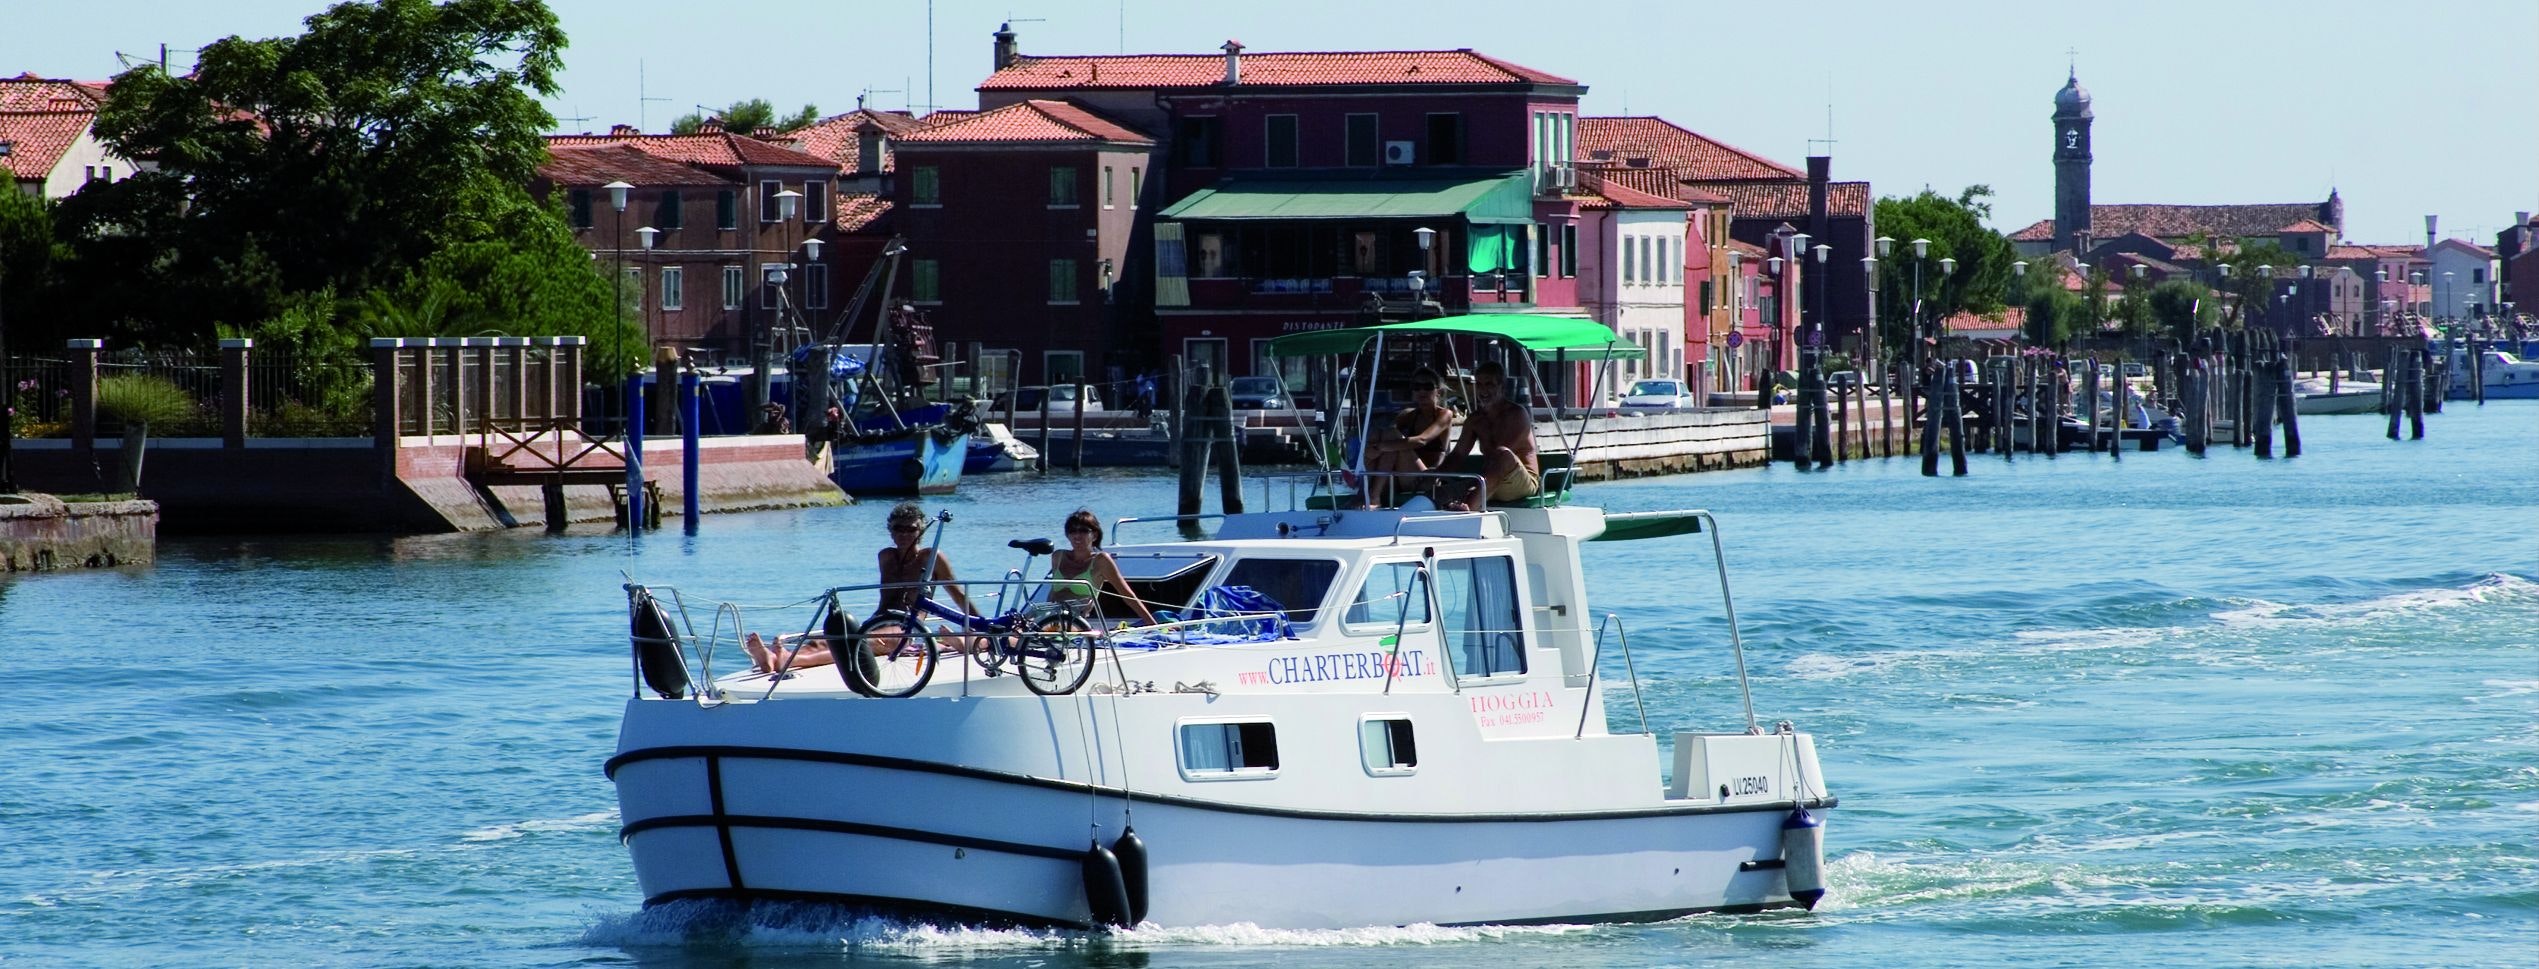 Menschen an Bord eines Hausbootes in der venezianischen Lagune